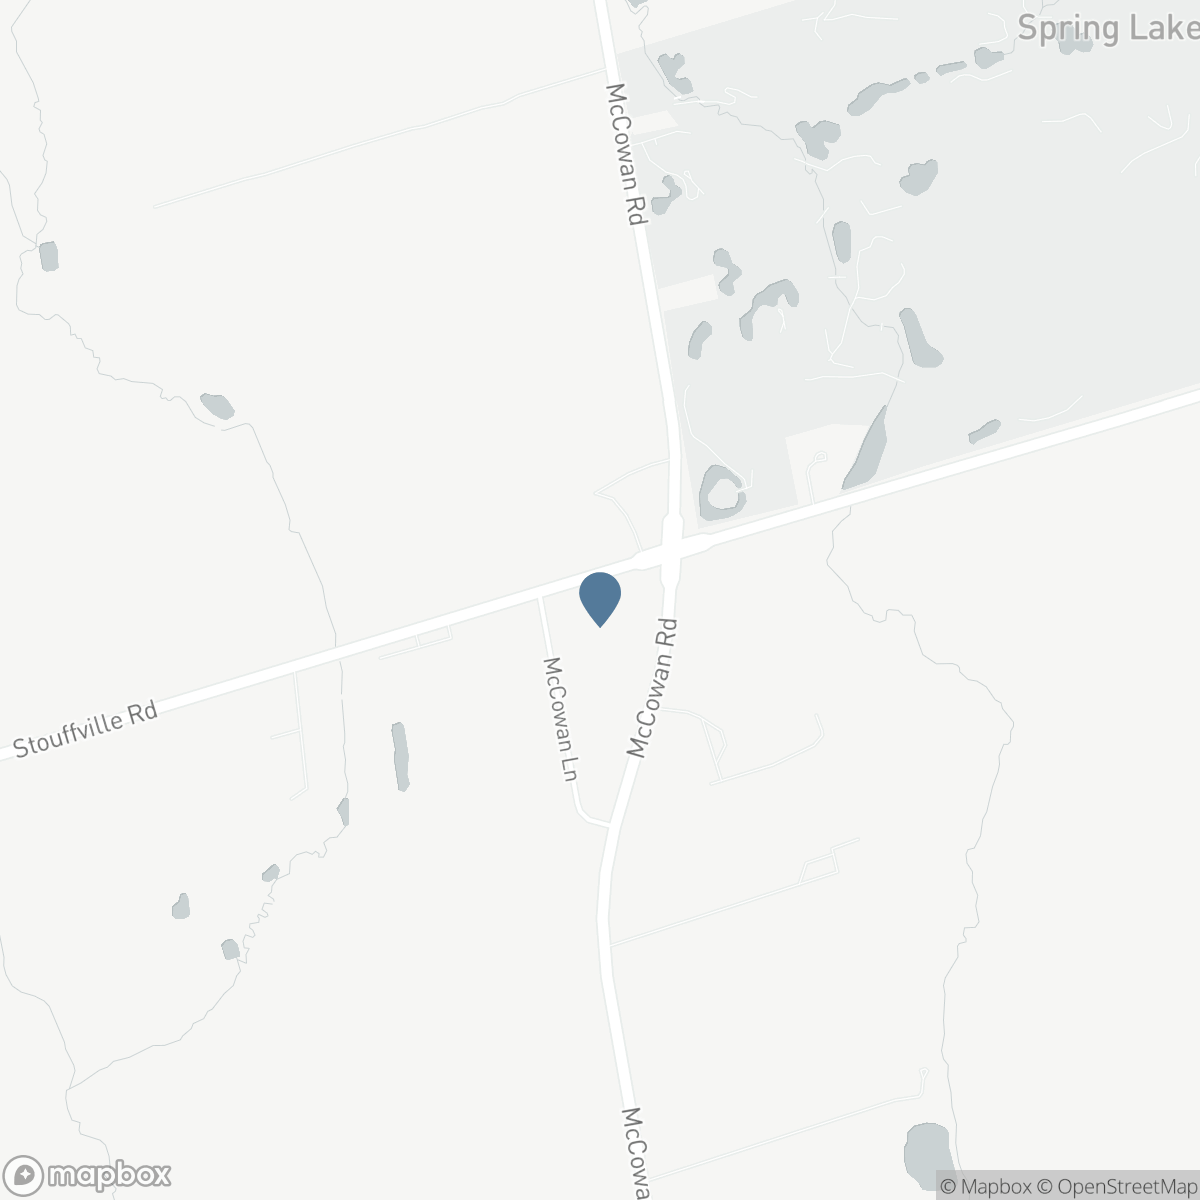 31 MCCOWAN LANE, Whitchurch-Stouffville, Ontario L4A 4C2